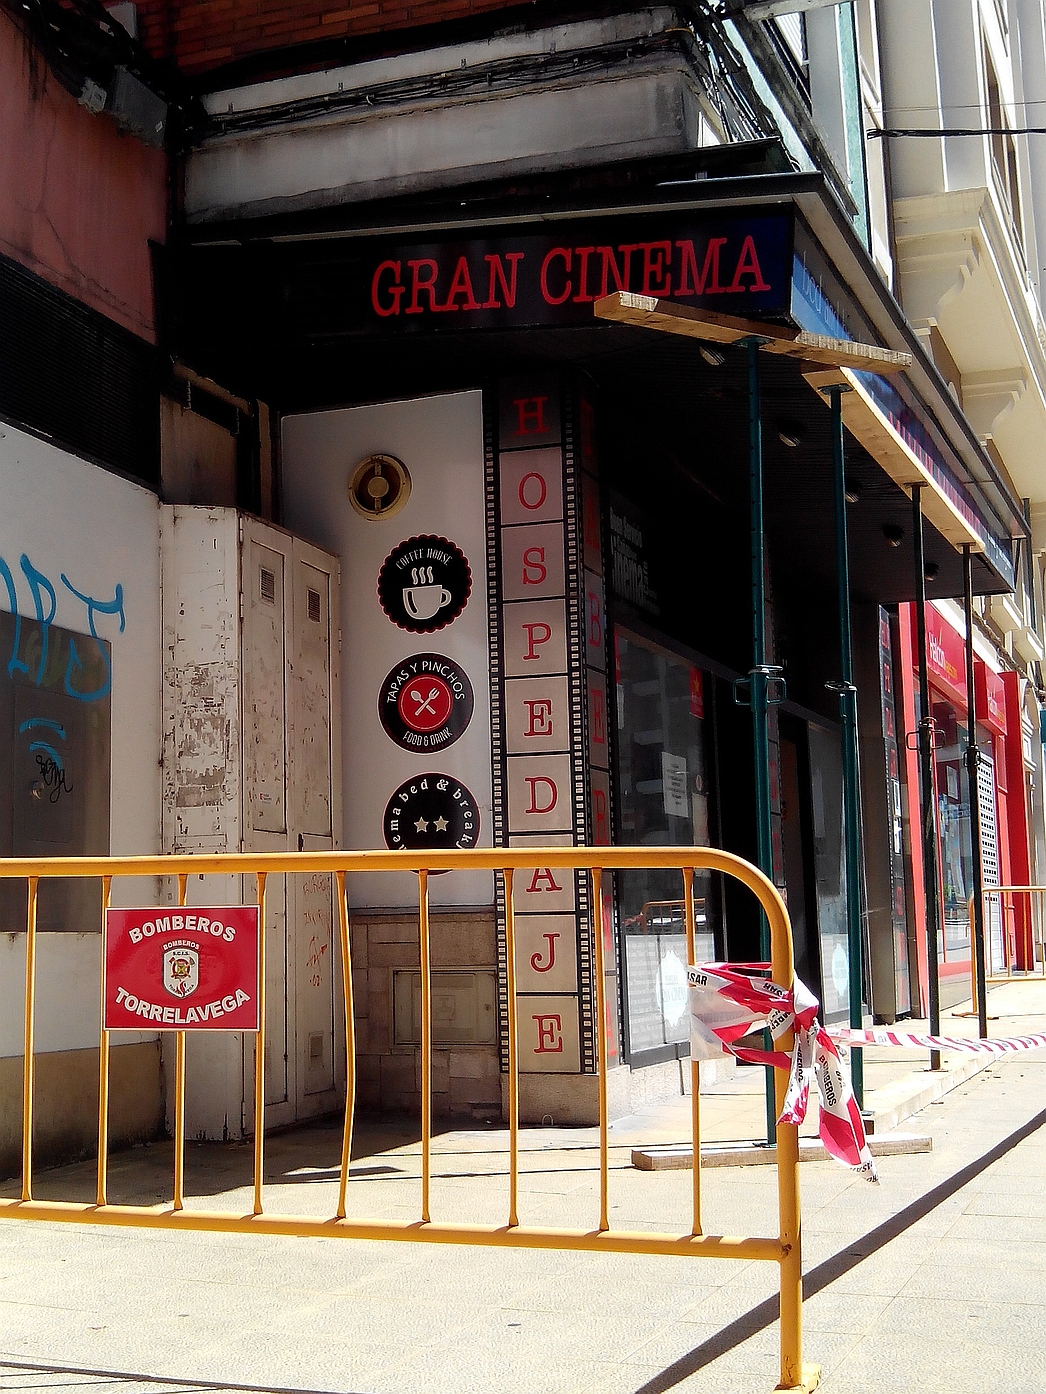  Acordonado el exterior del hospedaje Gran Cinema